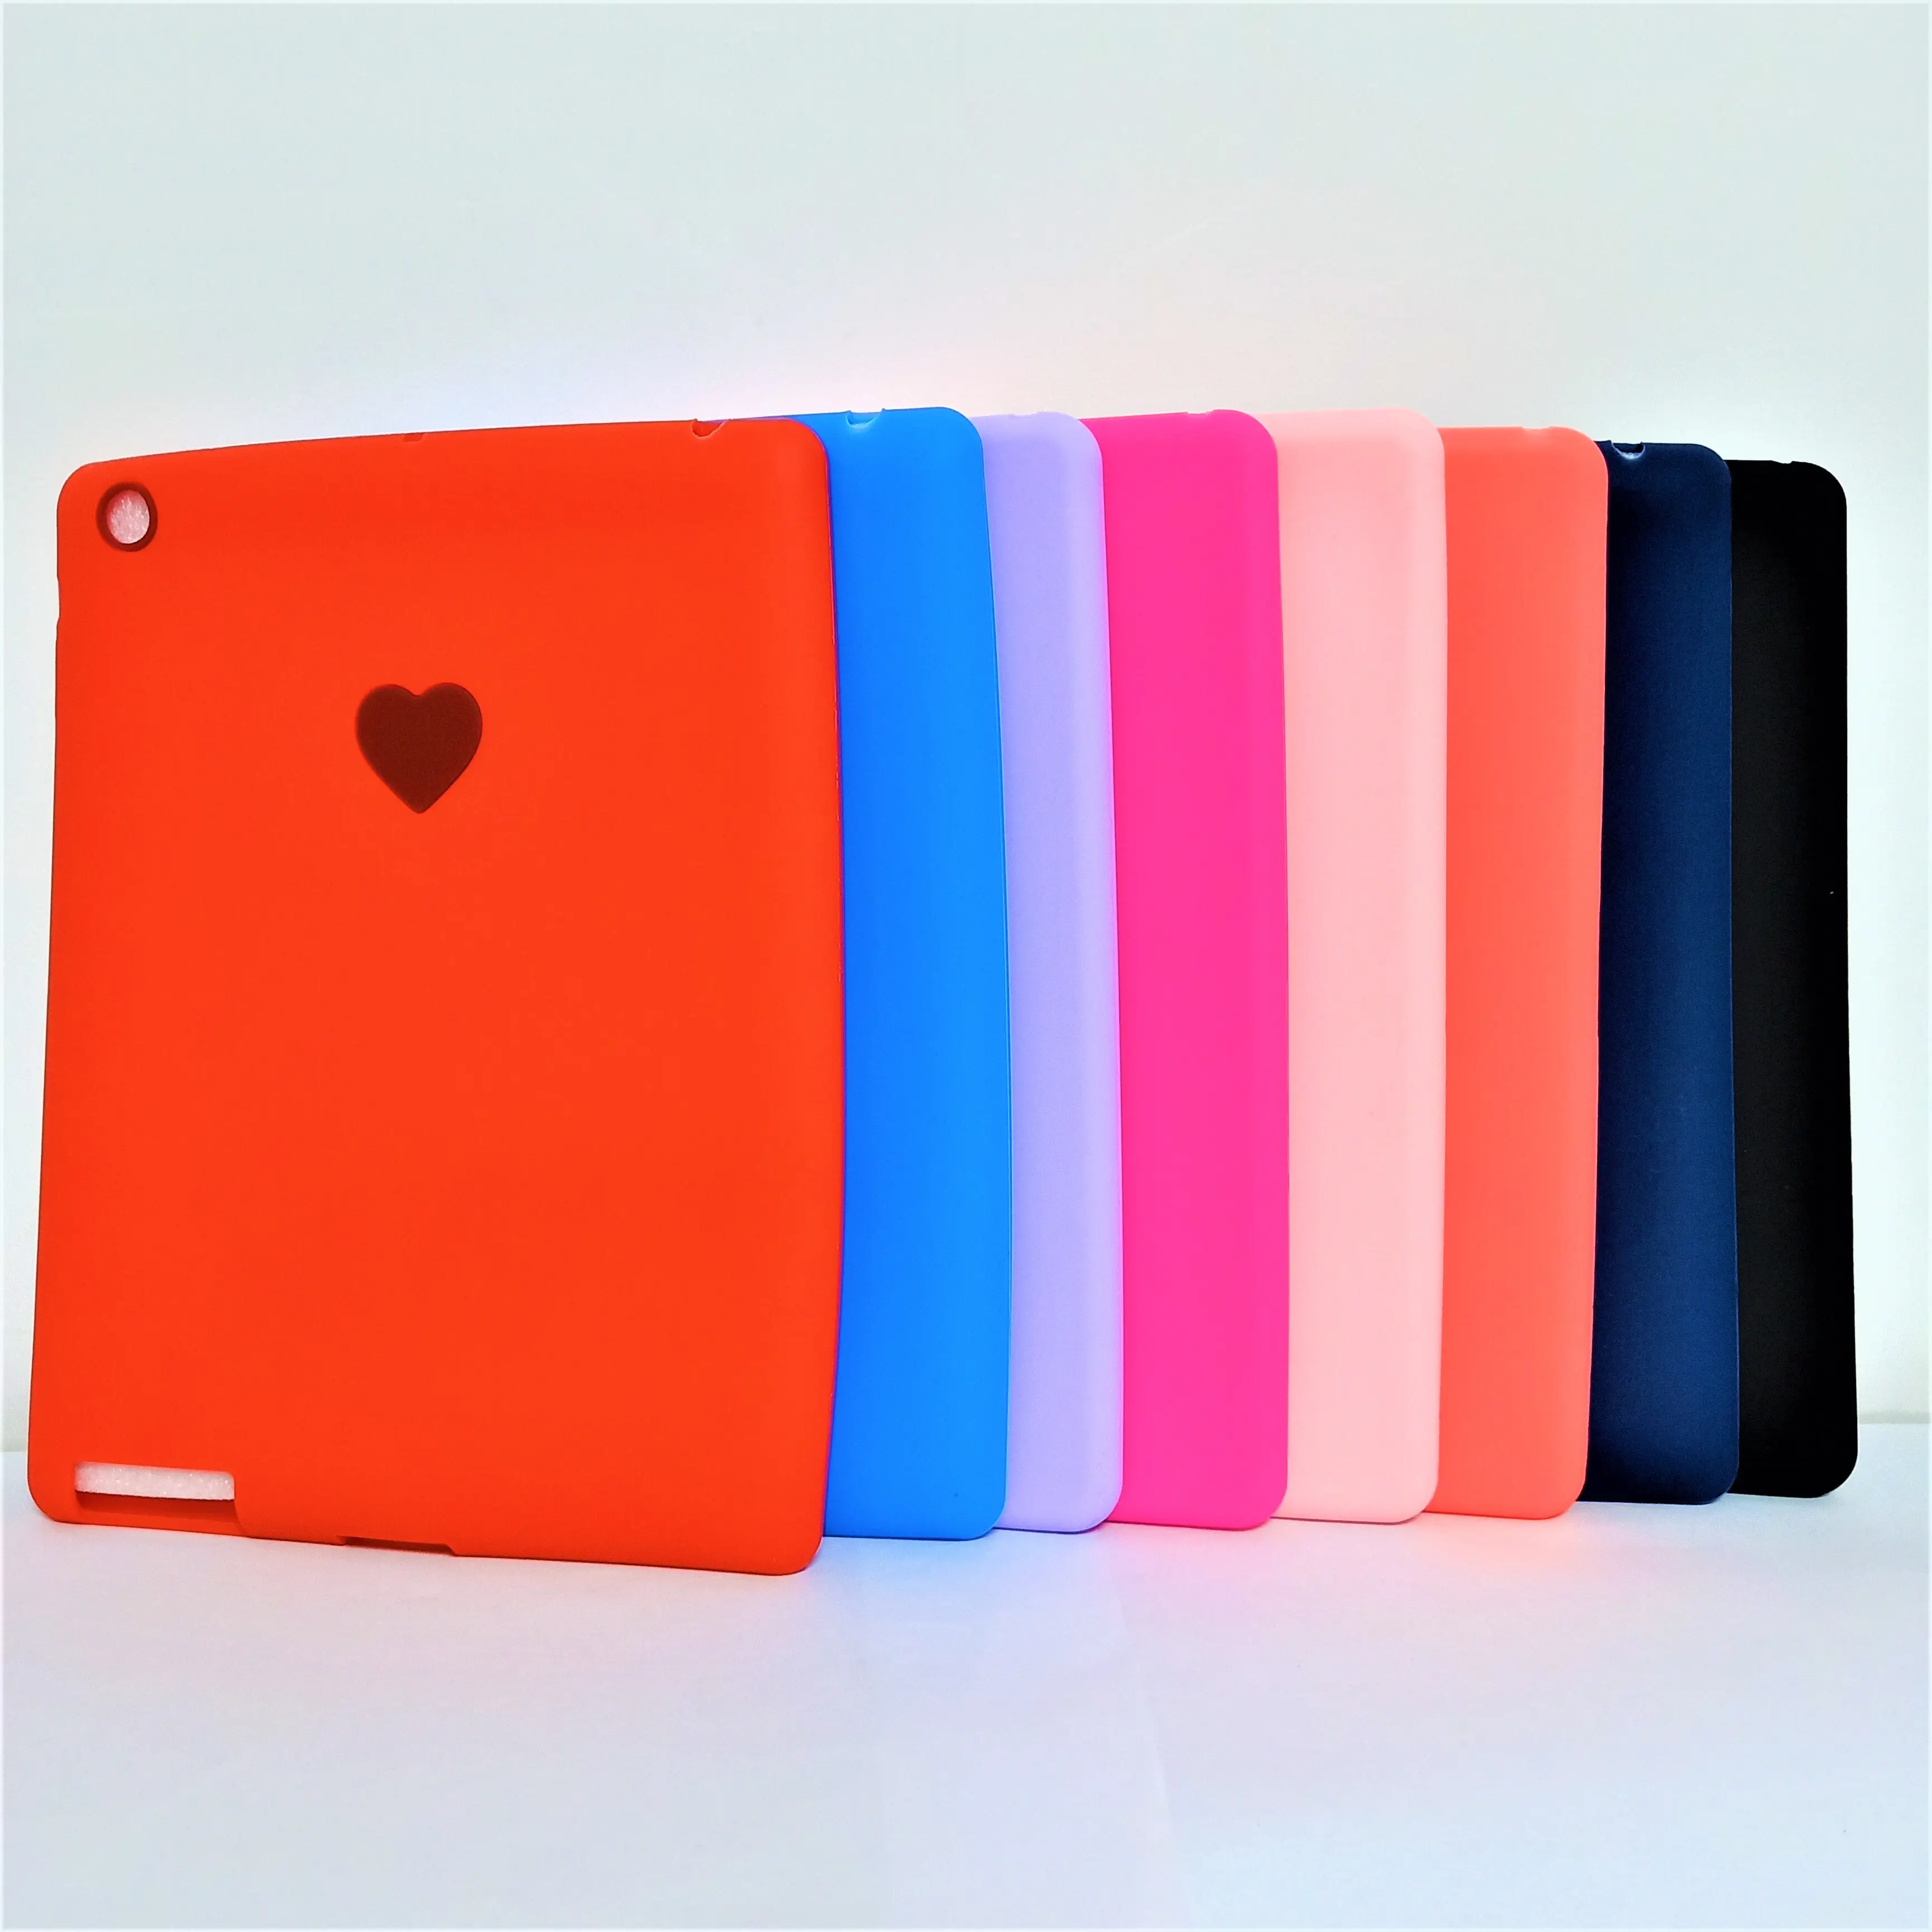 Casing pelindung Tablet iPad anak-anak, tiga perlindungan silikon tahan guncangan dengan 234 pilihan warna